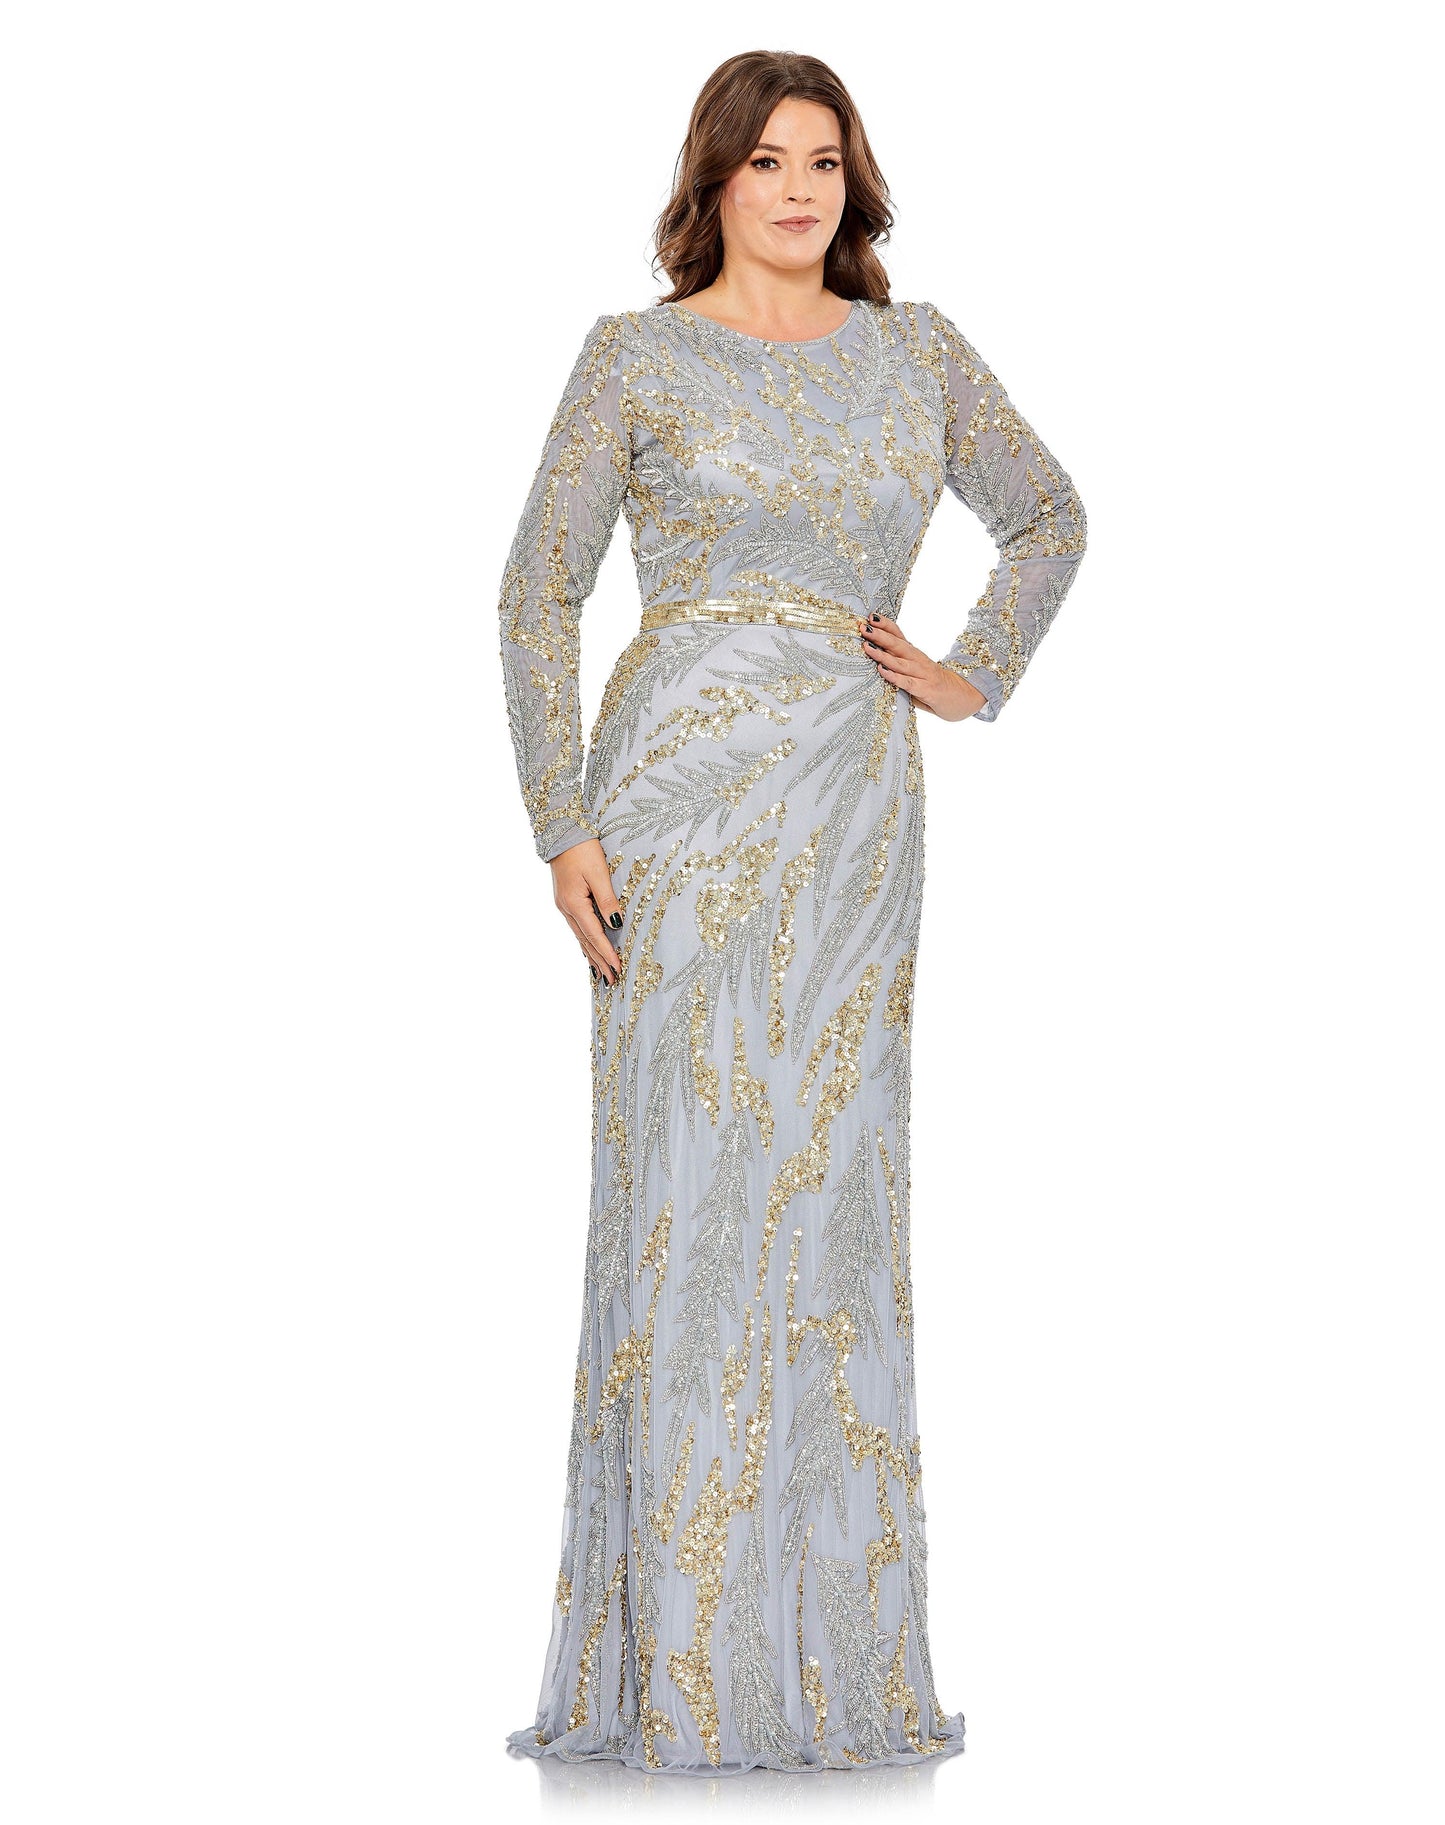 Plus Size Dresses Fabulouss Long Mother of the Bride Plus Size Dress Platinum Gold